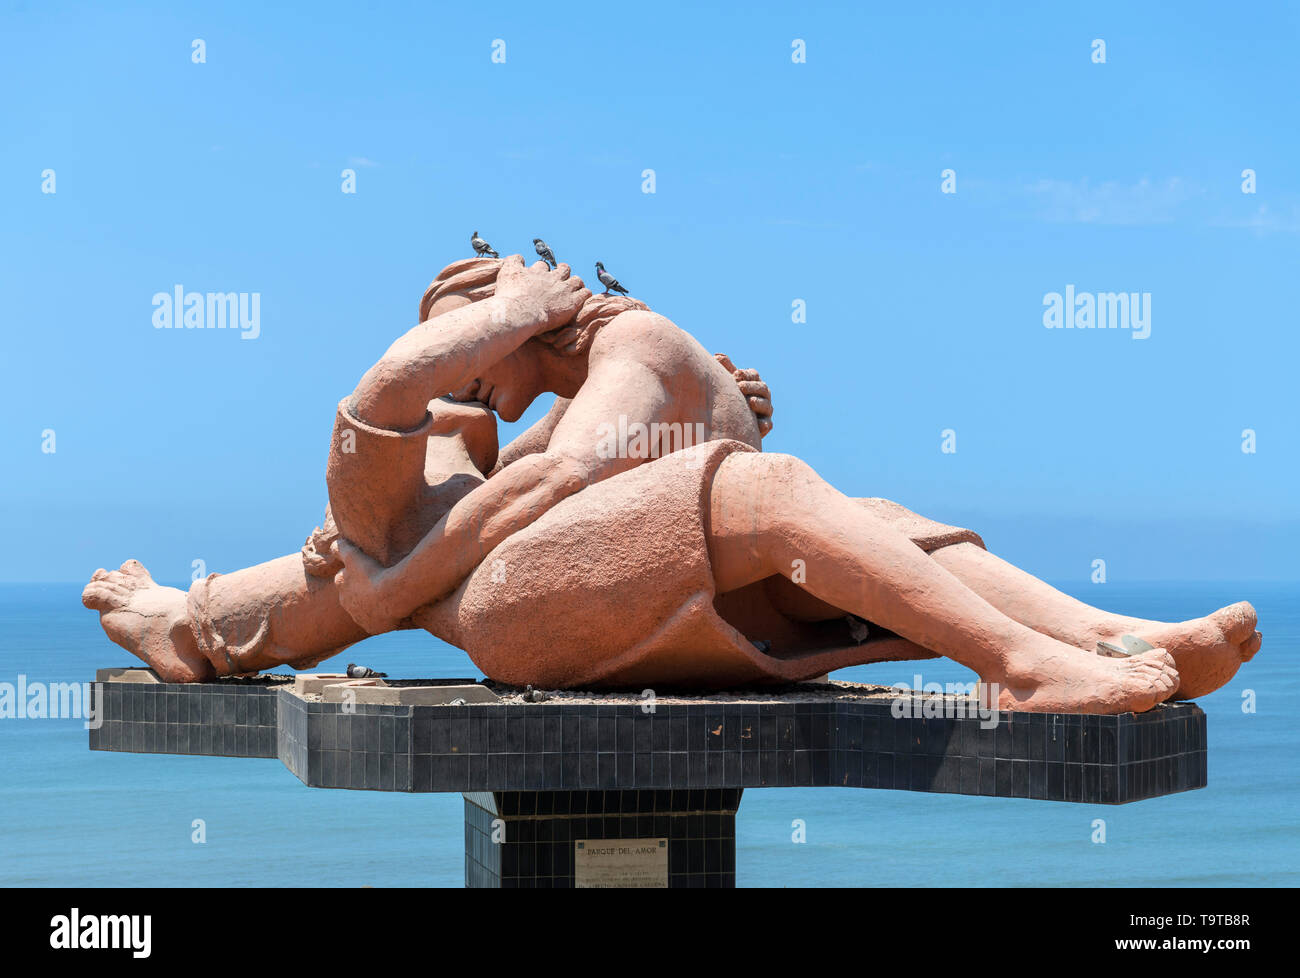 El Beso (Der Kuss) von Bildhauer Victor Delfin auf den Klippen mit Blick auf den Pazifischen Ozean, Parque del Amor, Miraflores, Lima, Peru, Südamerika Stockfoto